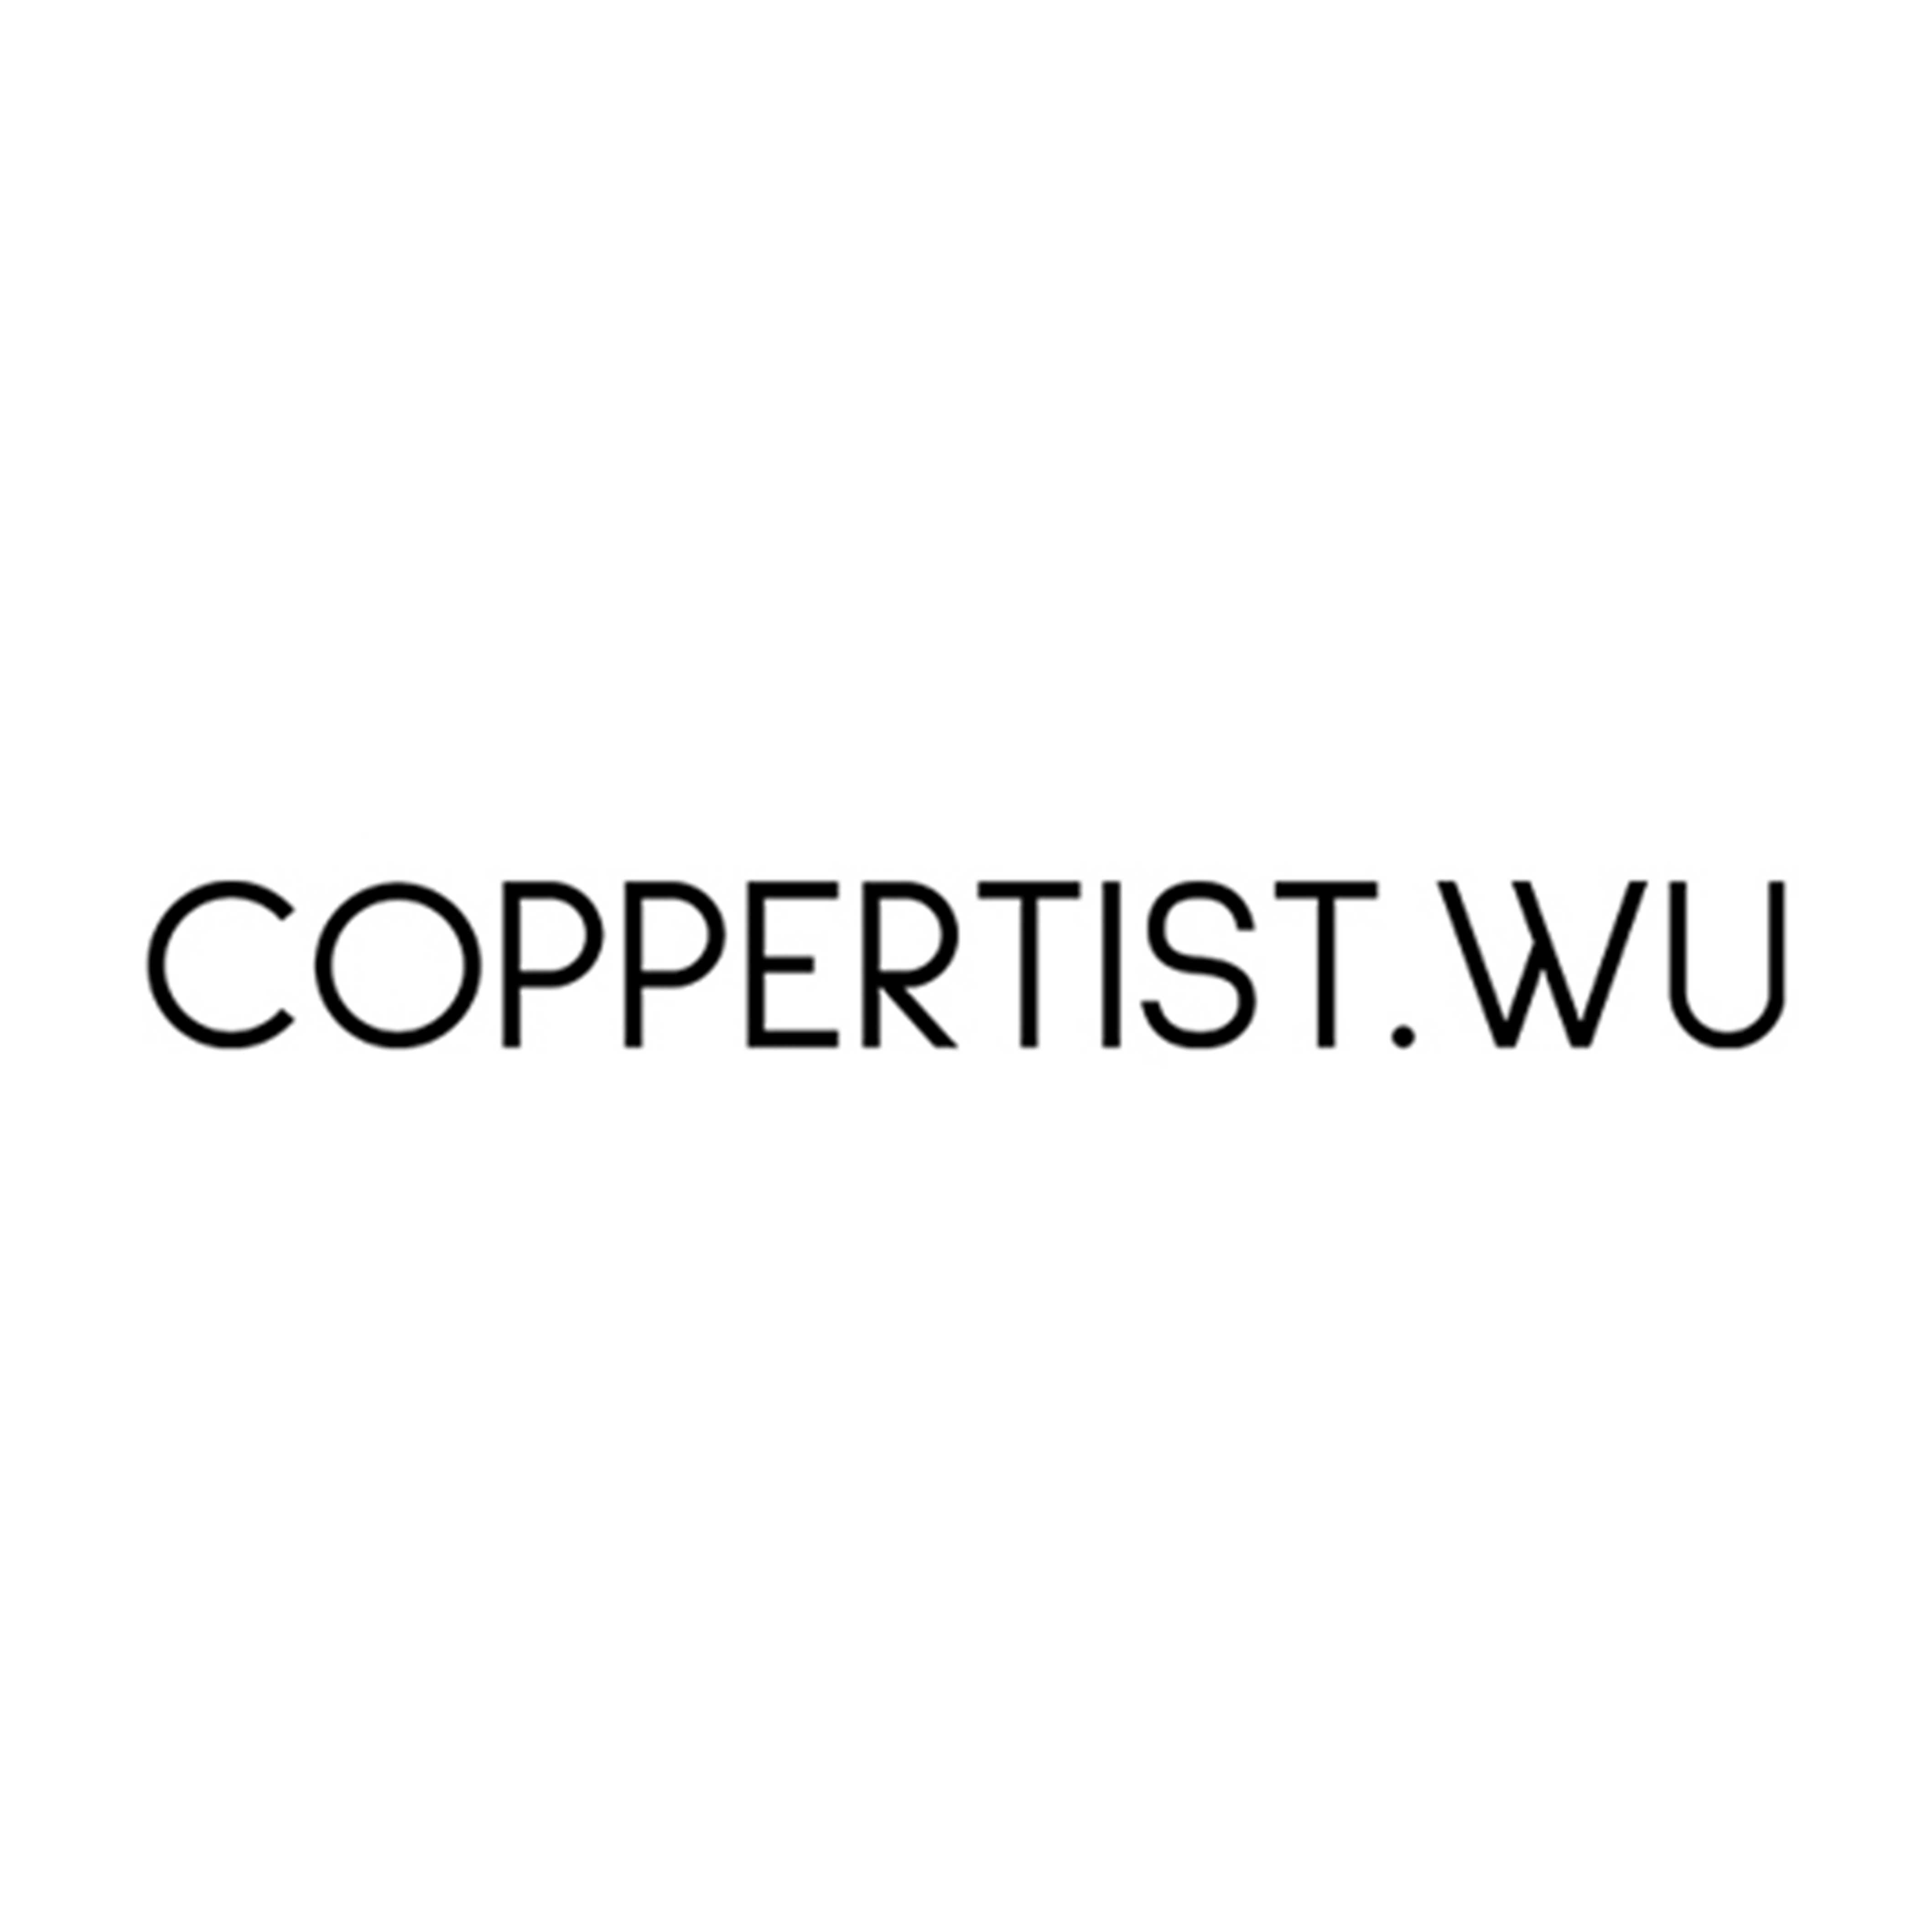 Coppertist.Wu